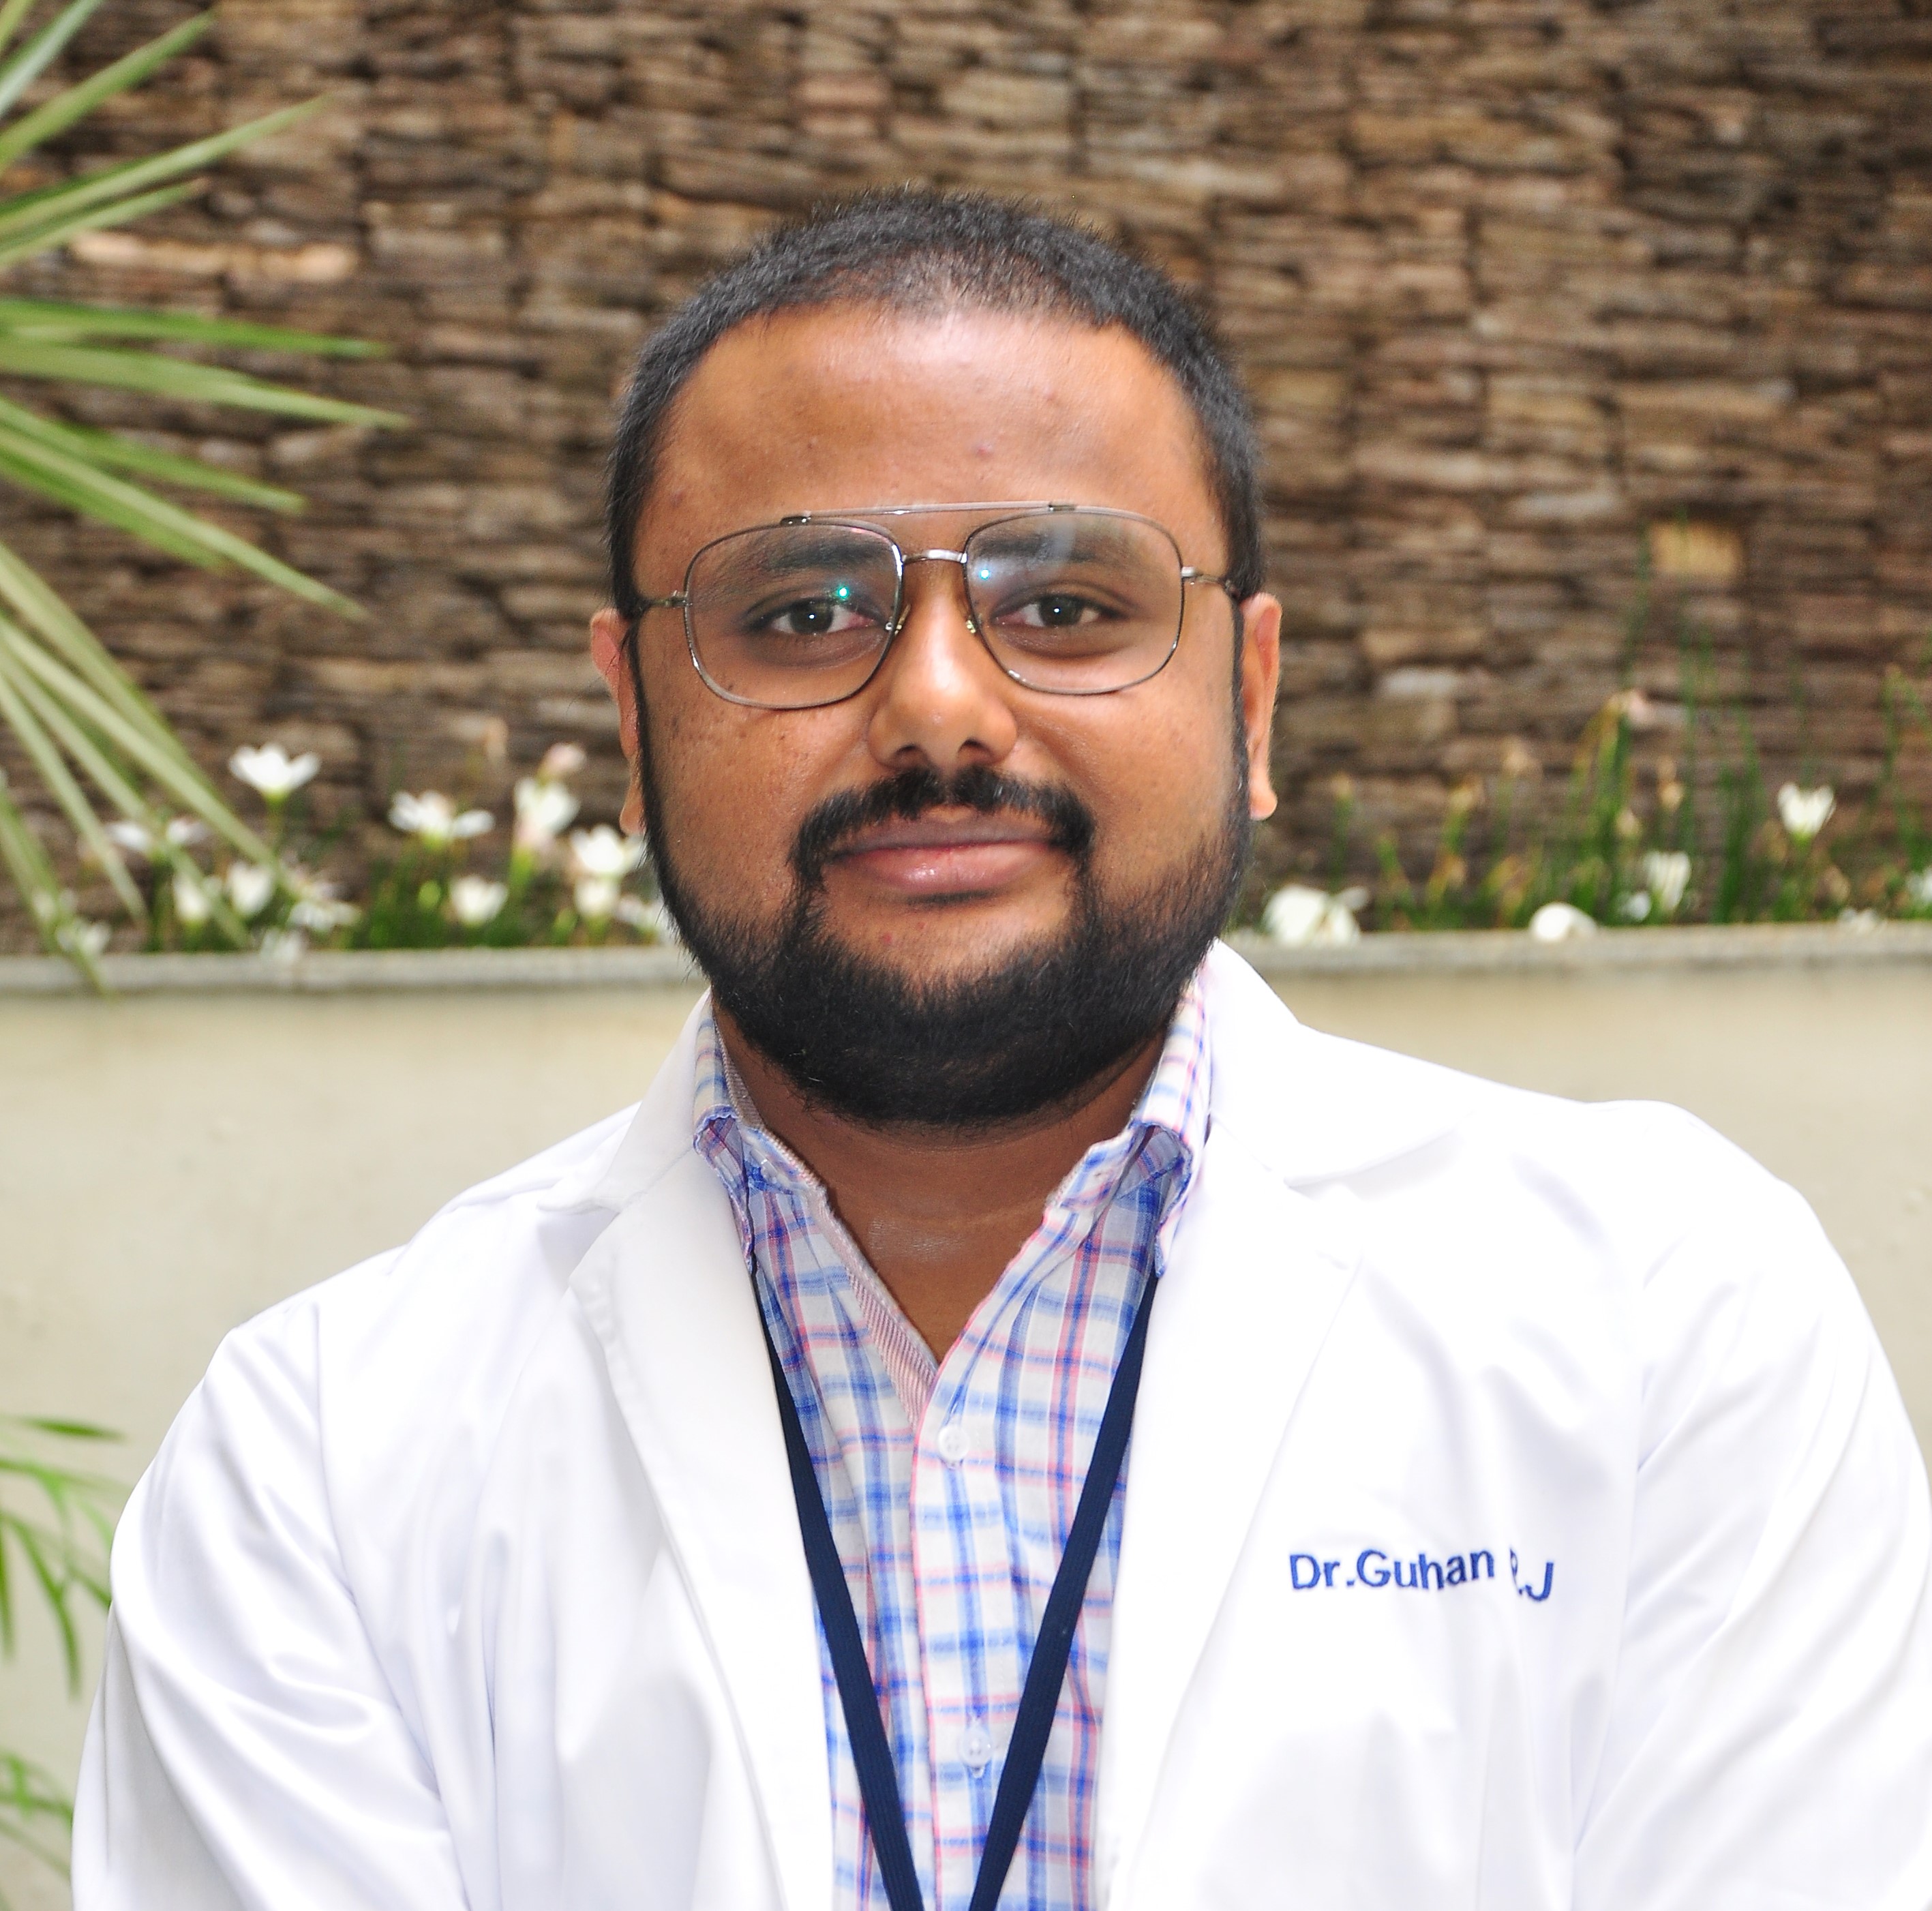 Dr. Guhan R. J